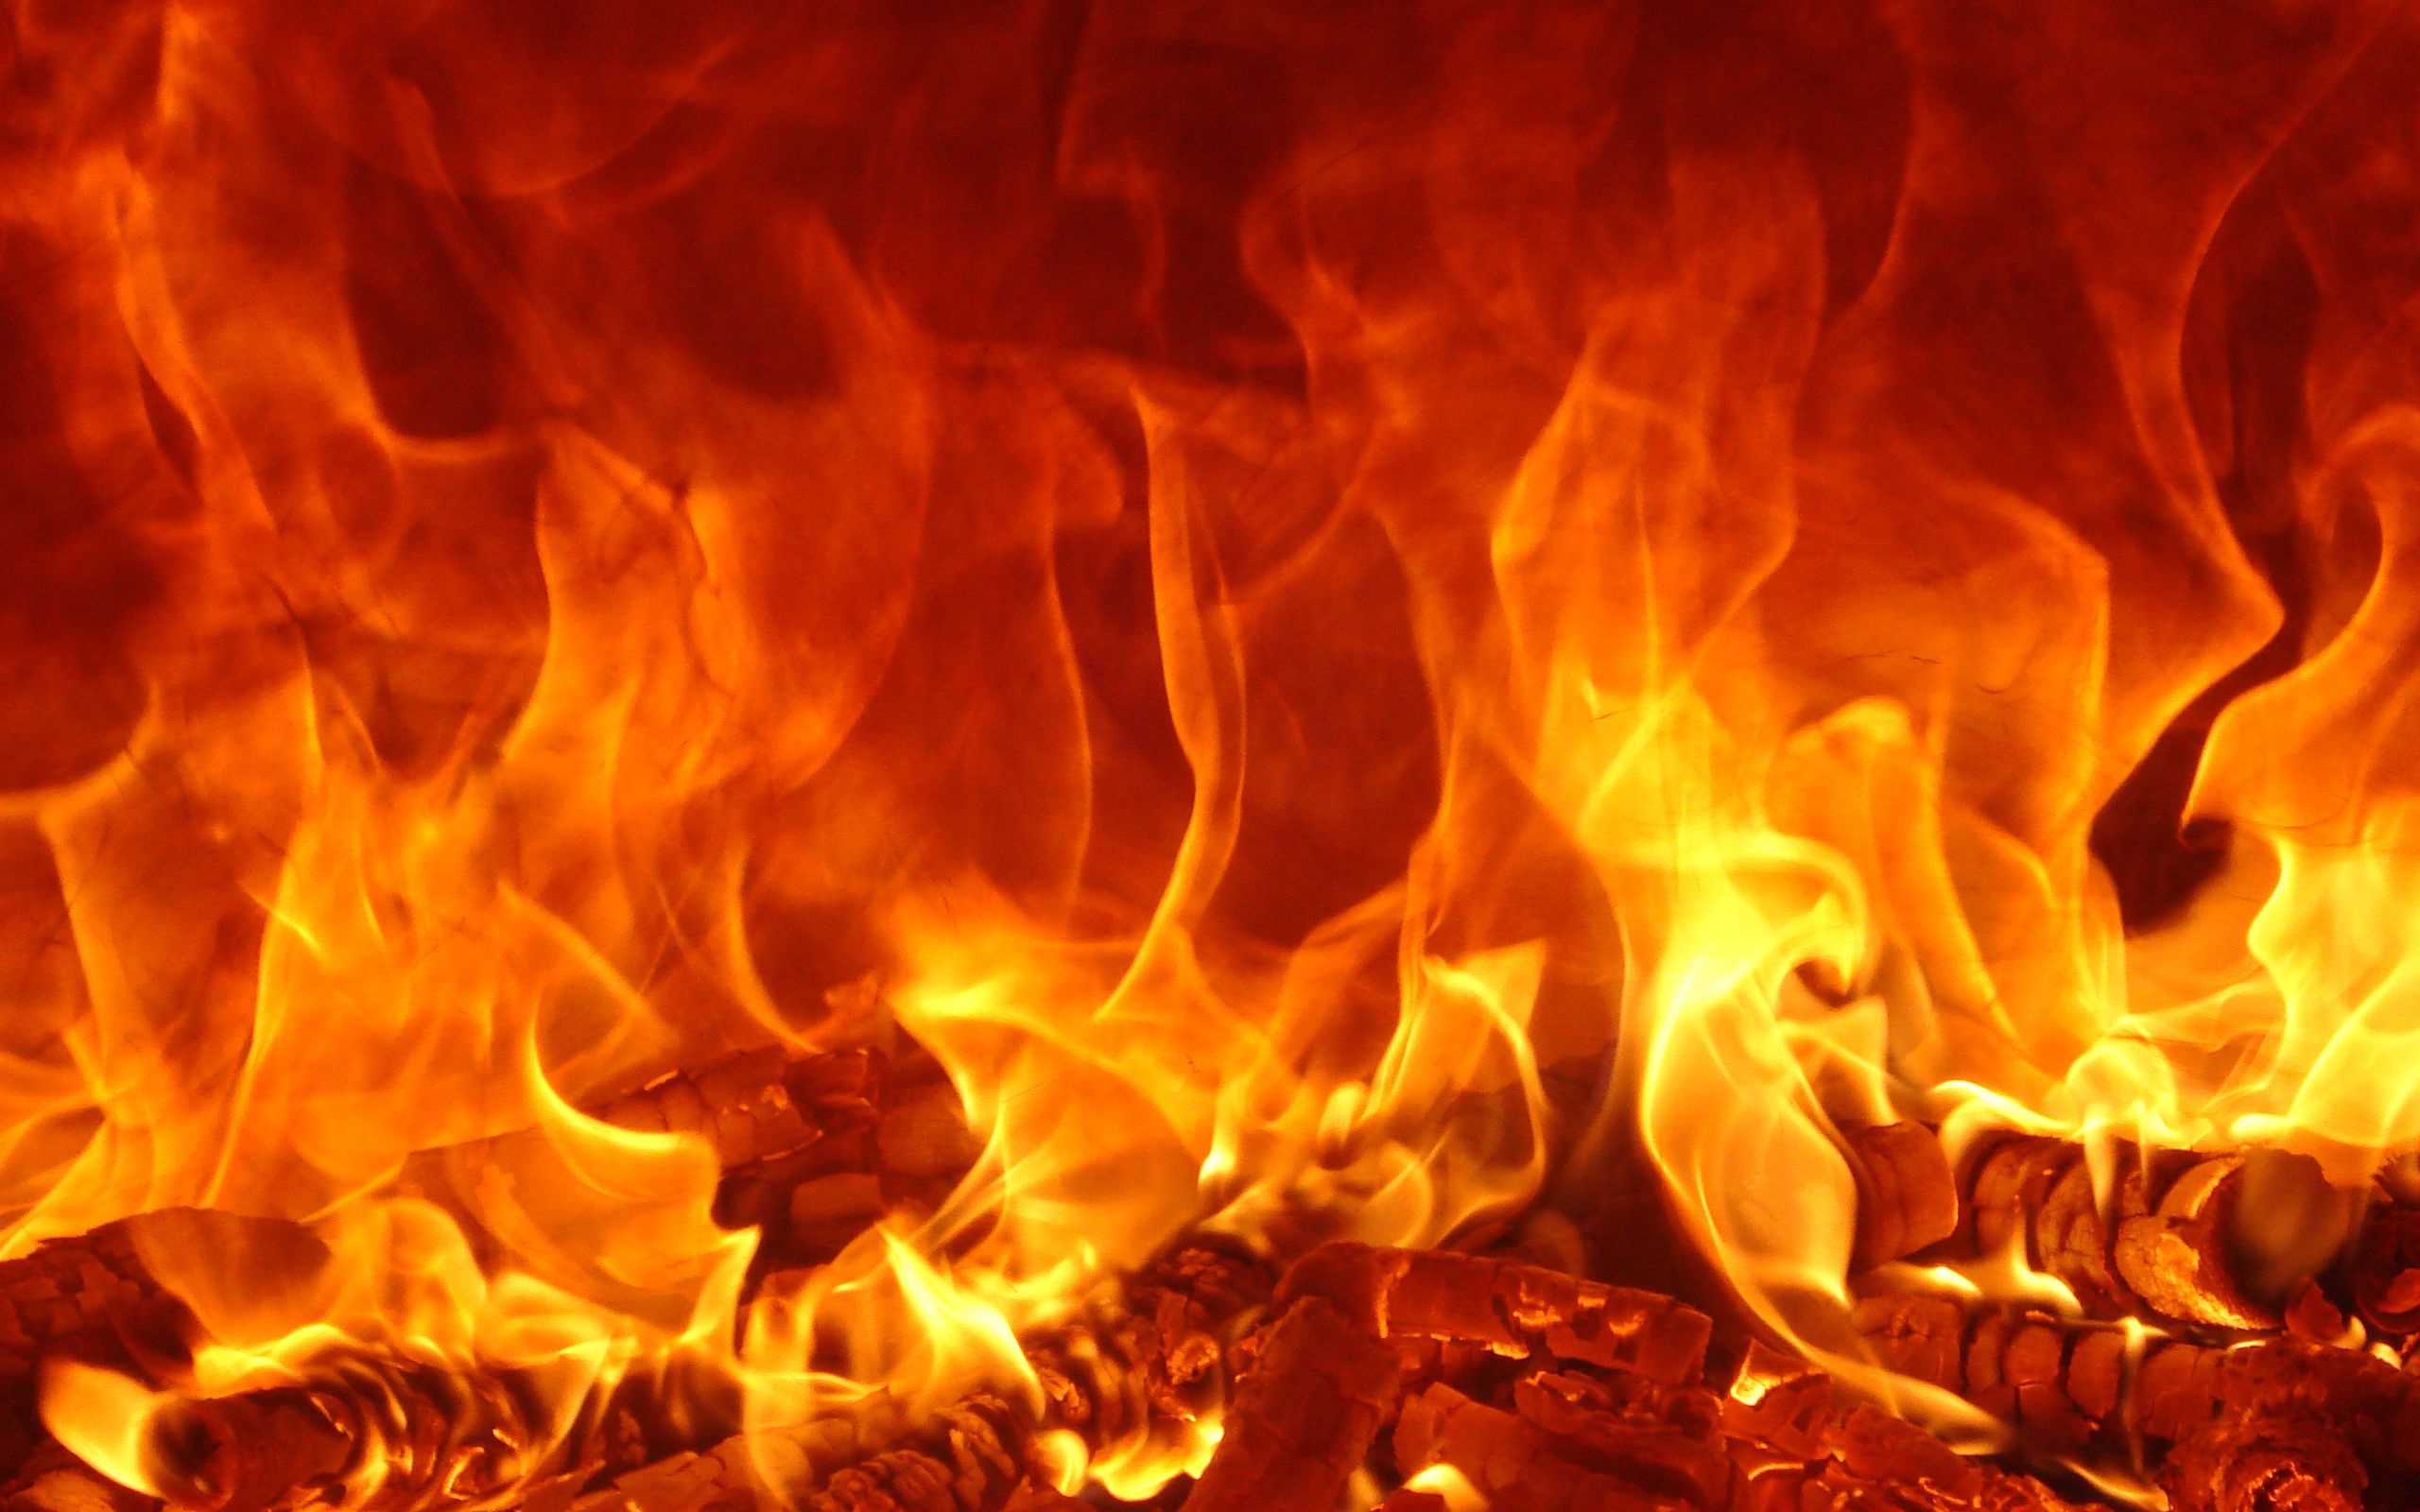 Fire wallpapers, Ablaze artwork, Dynamic flames, Fiery backgrounds, Burning beauty, 2560x1600 HD Desktop